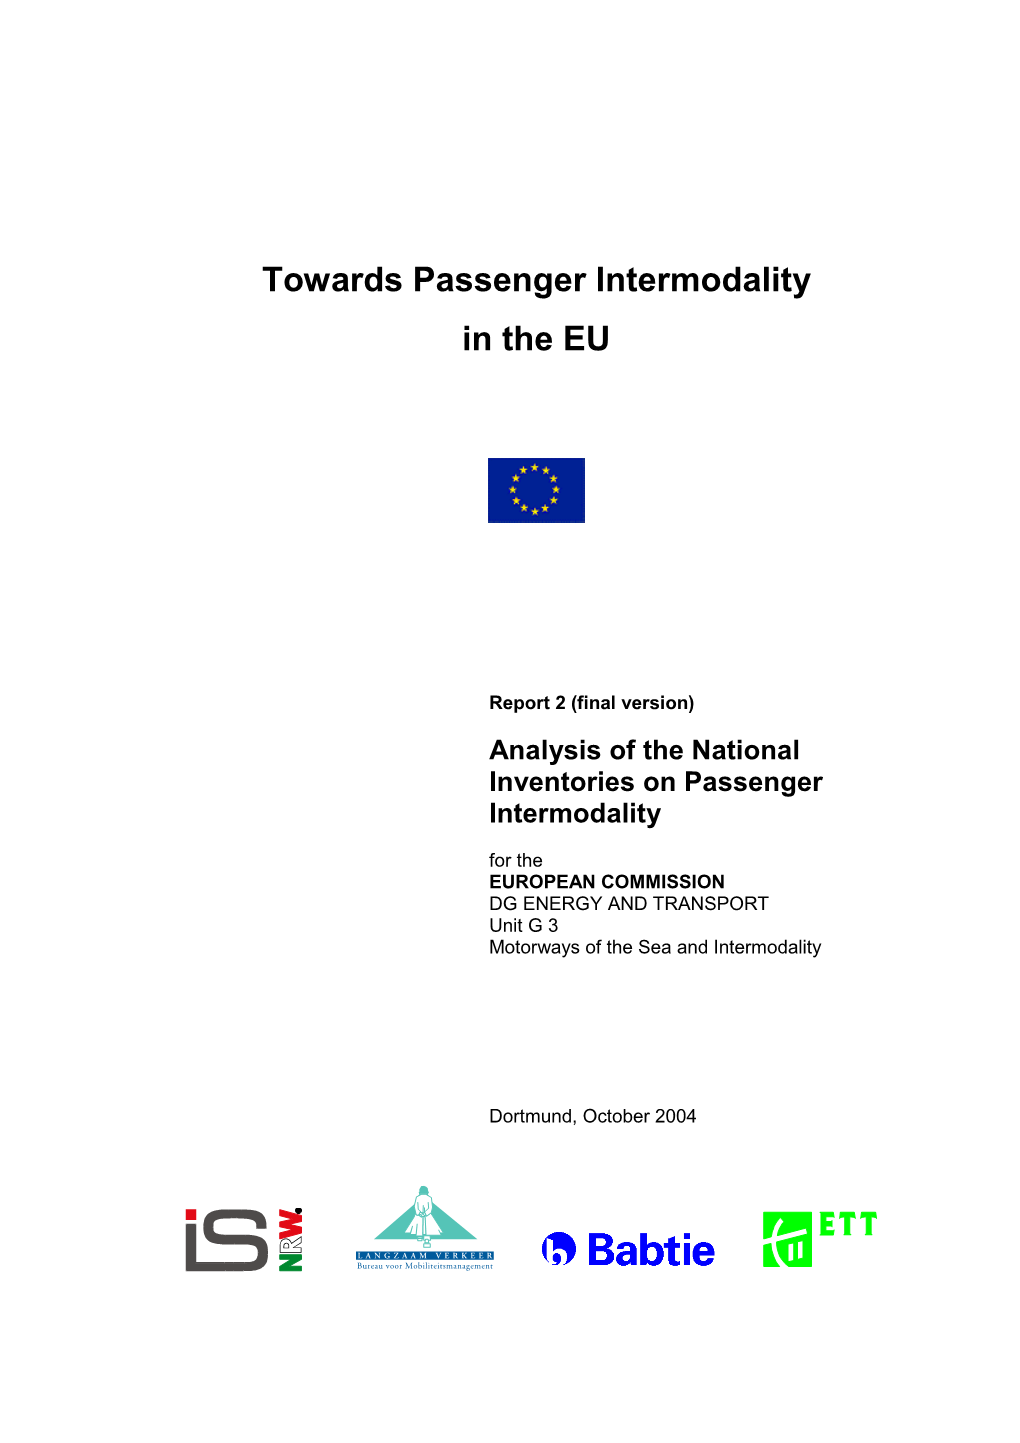 Towards Passenger Intermodality in the EU